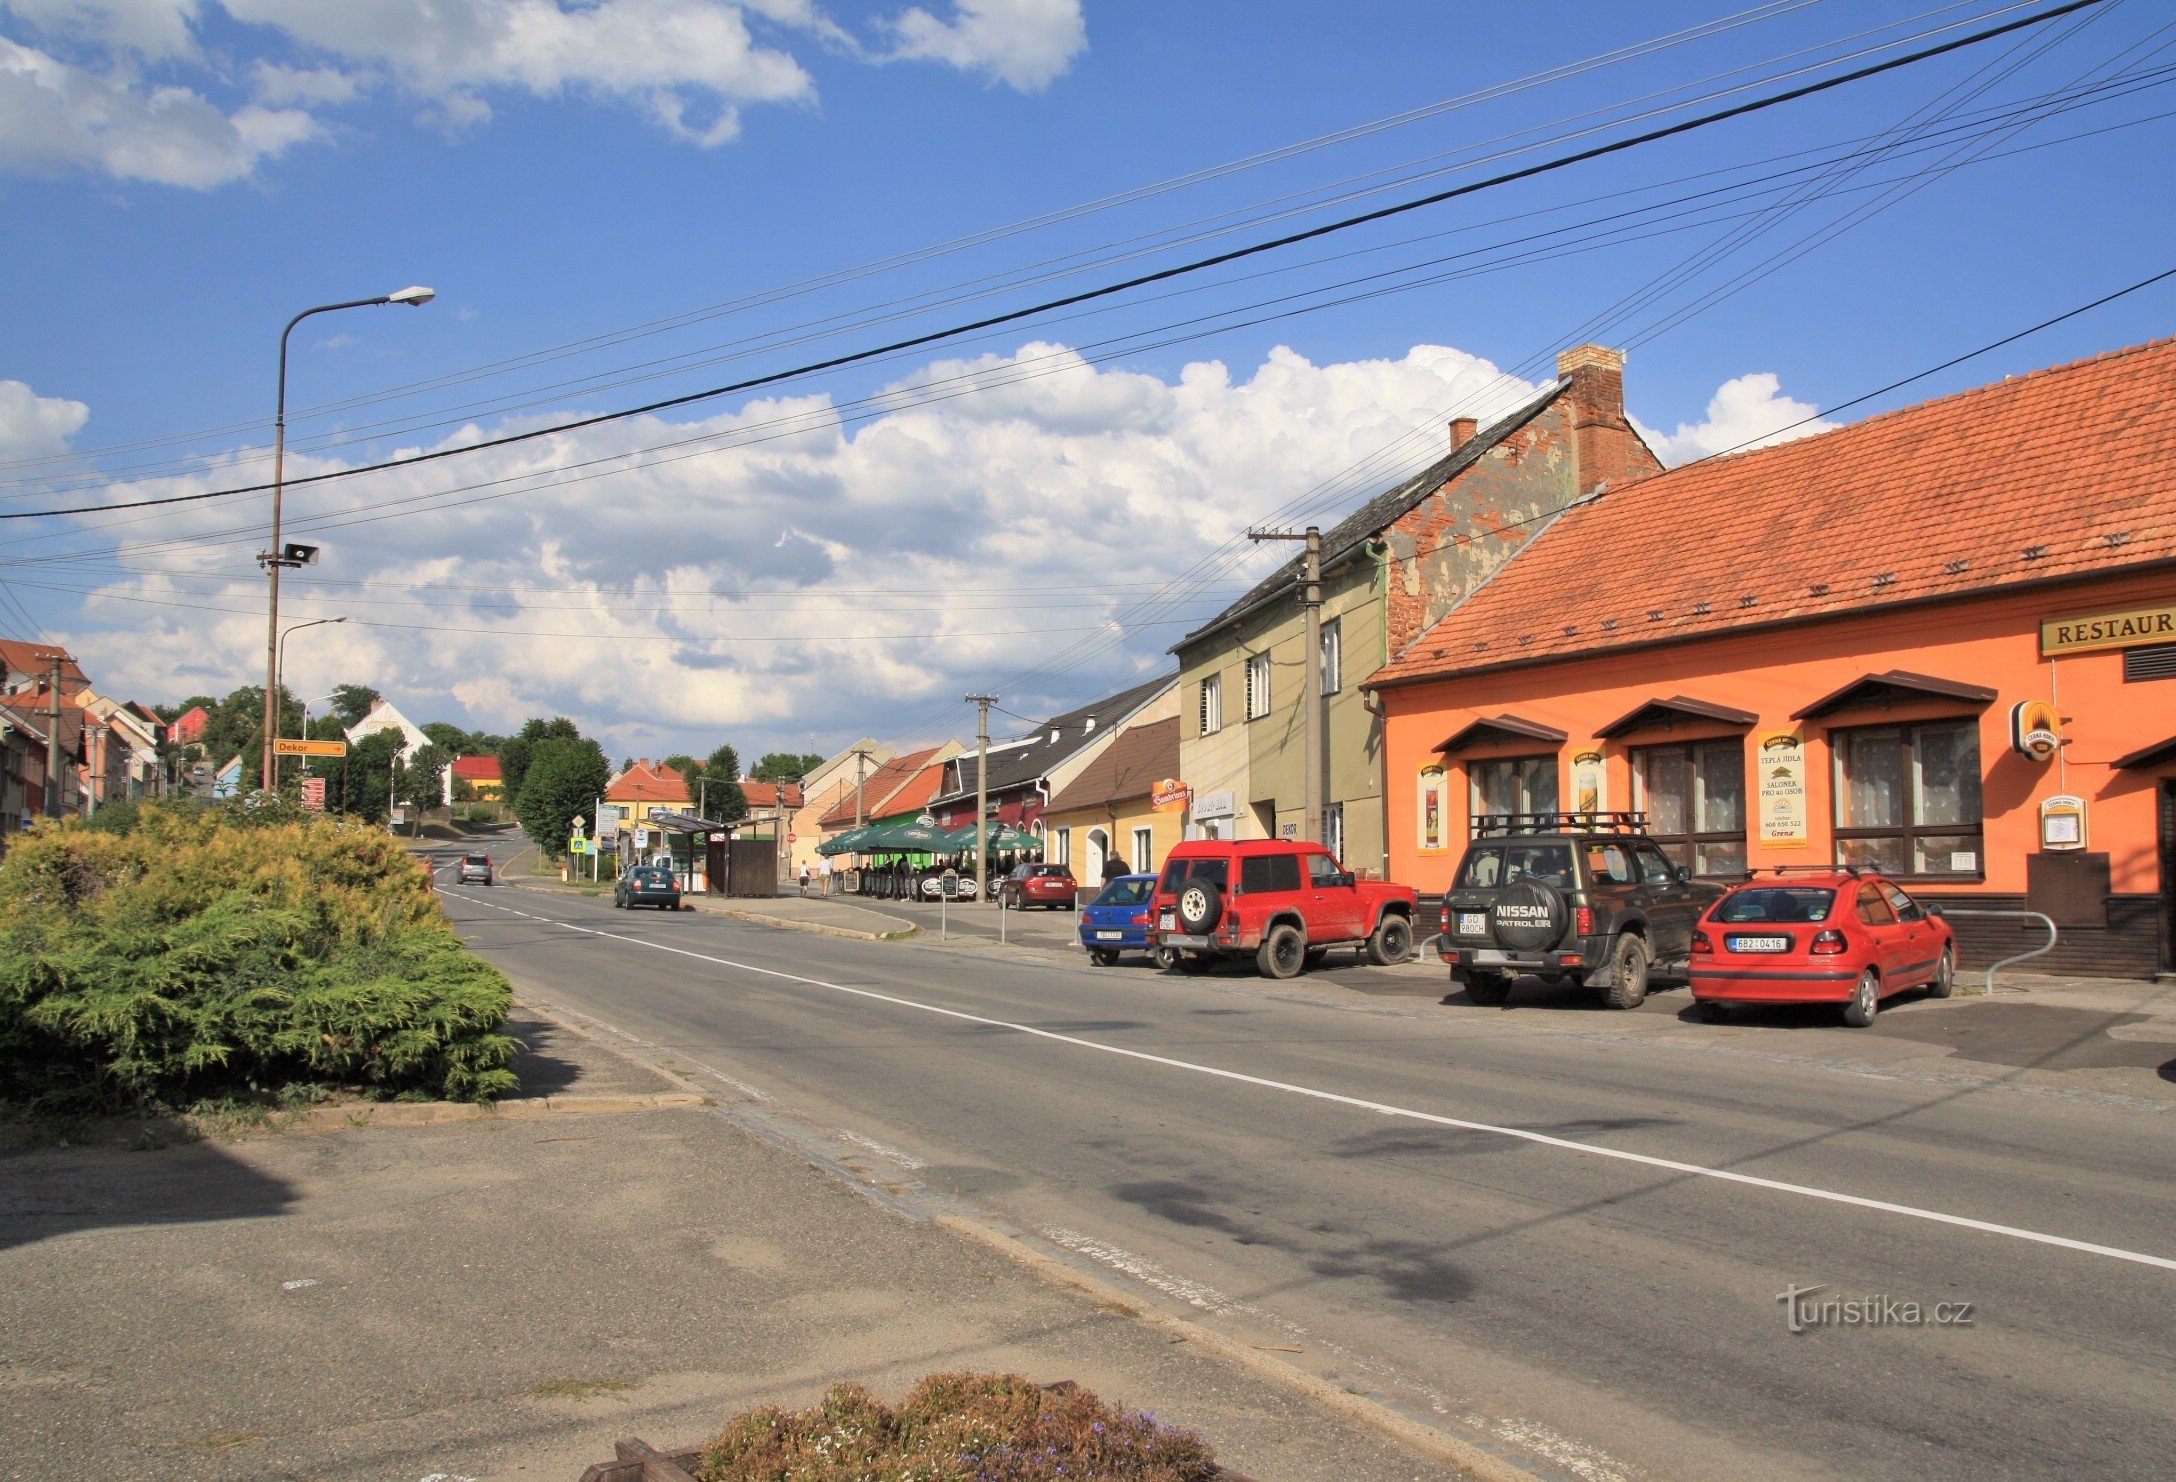 Piața Havlíček din Jedovnice